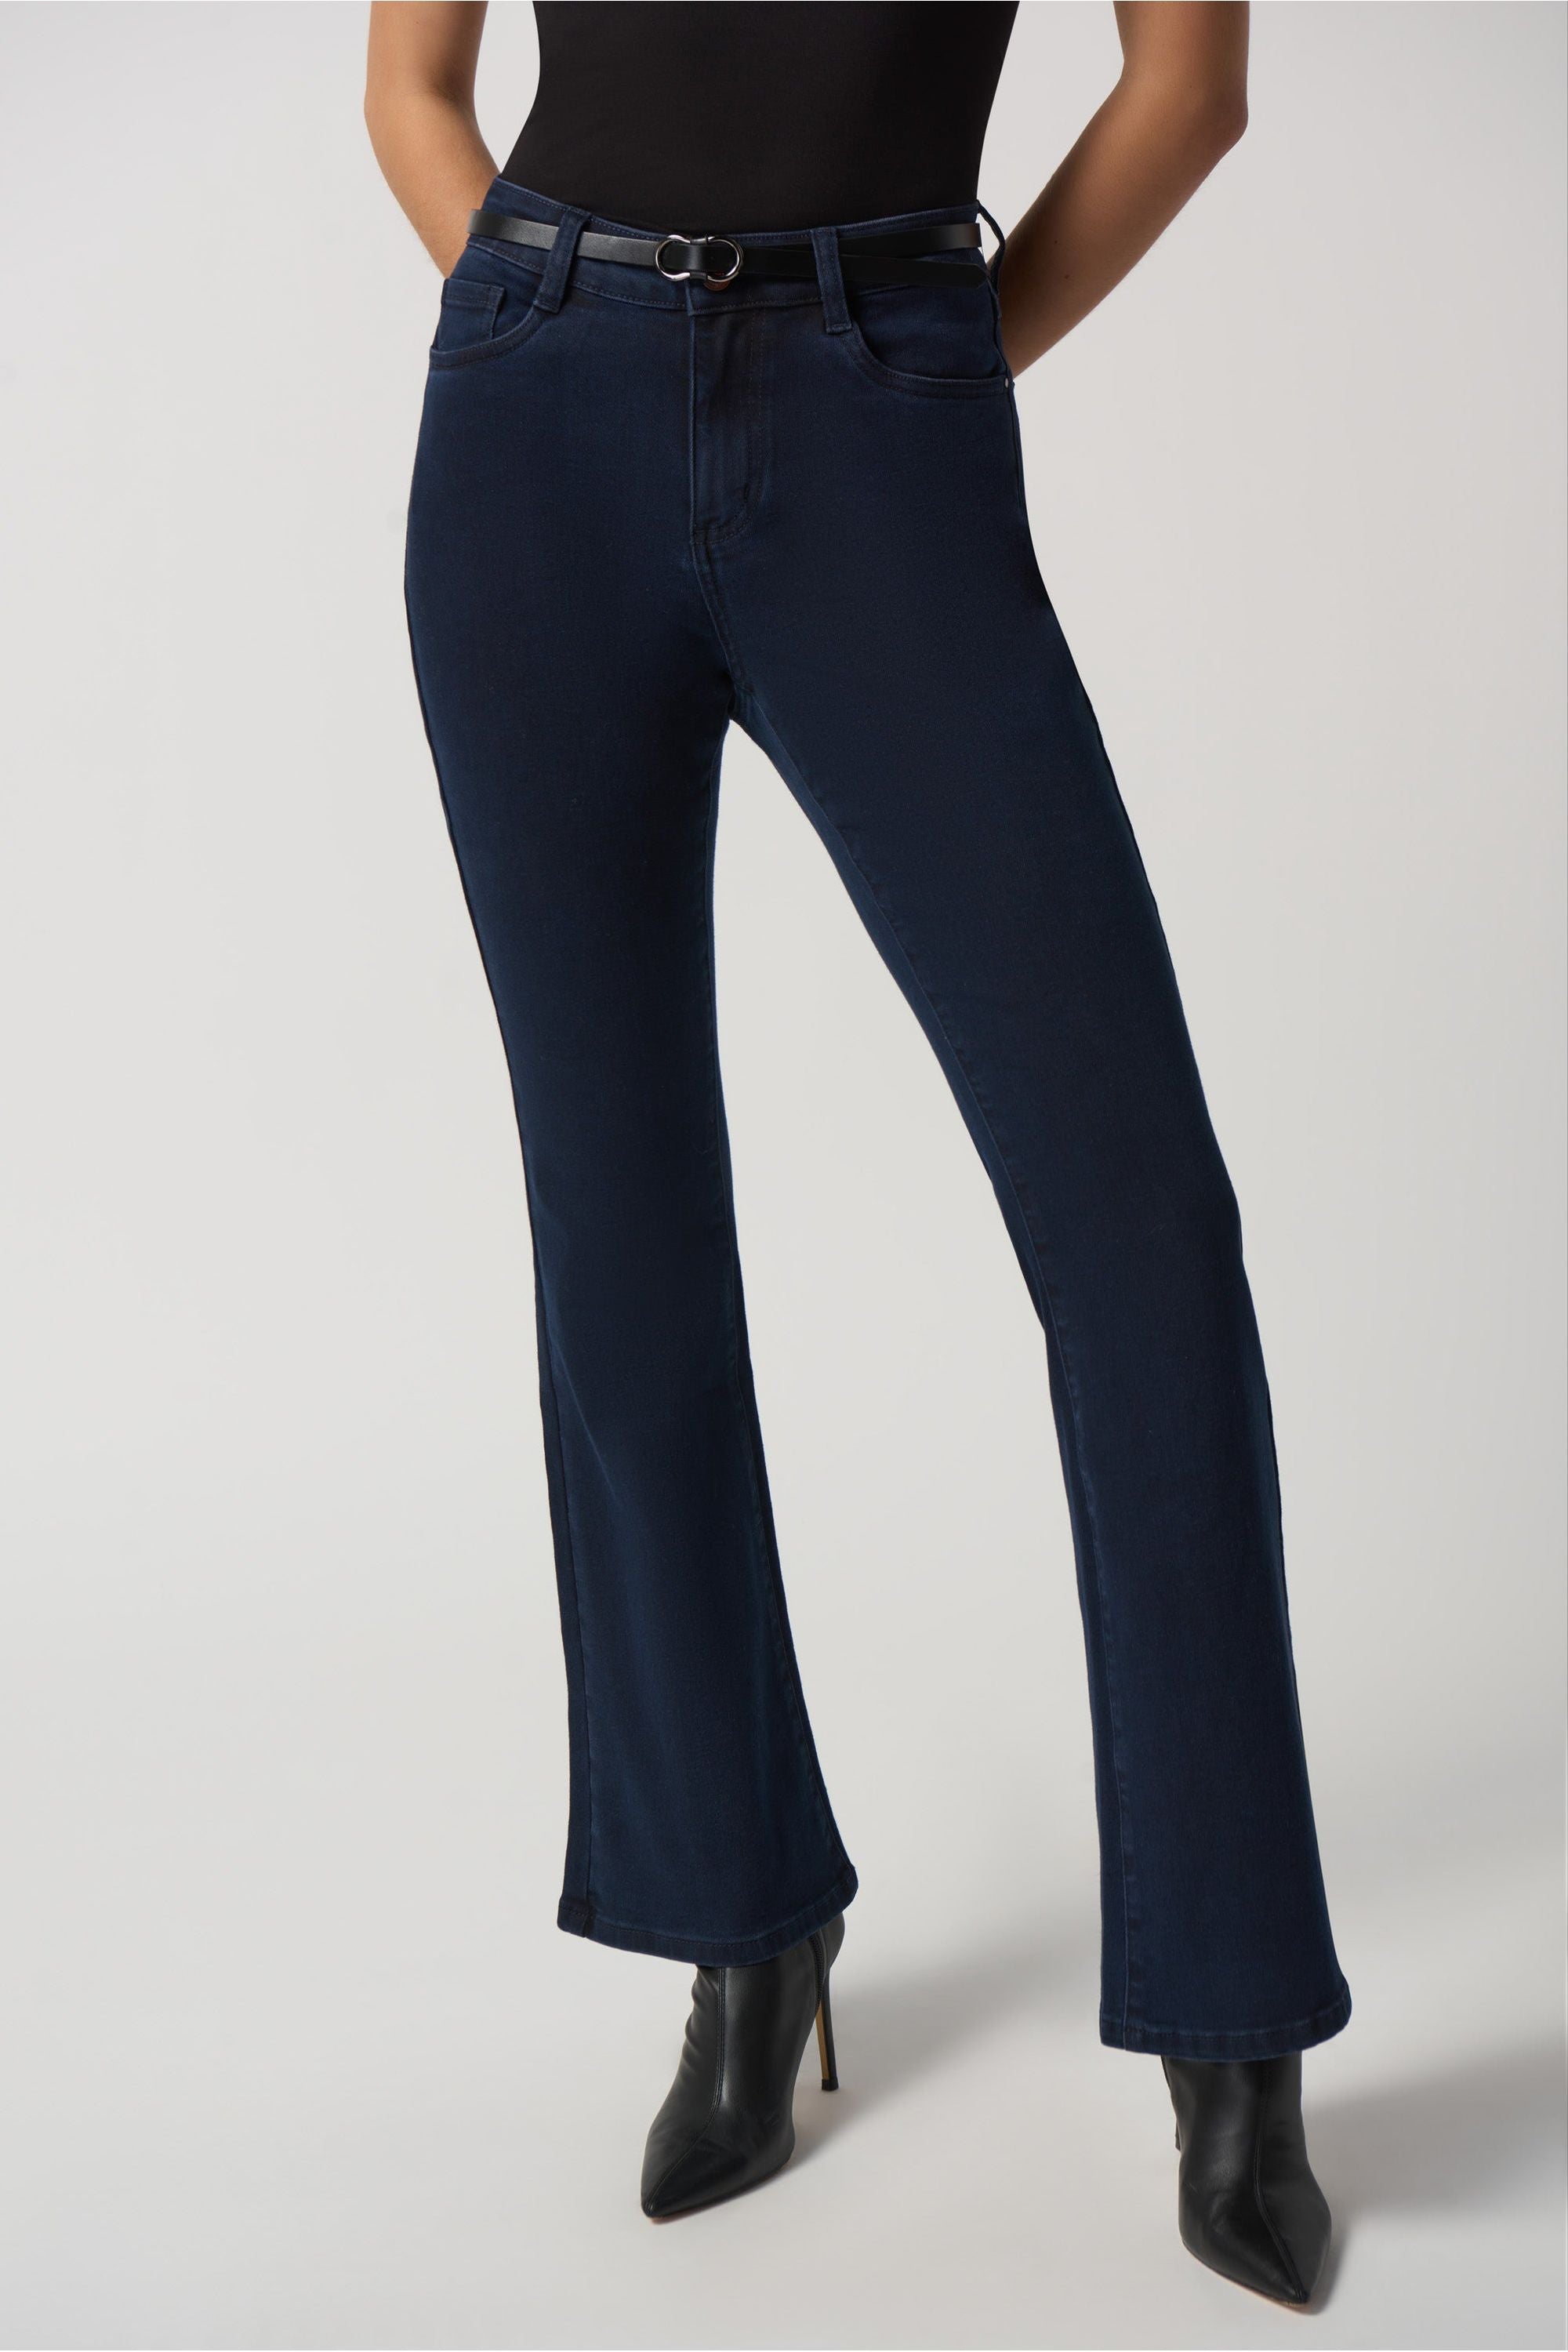 Carreli Jeans® | Angela Fit Capri In Bleach Wash